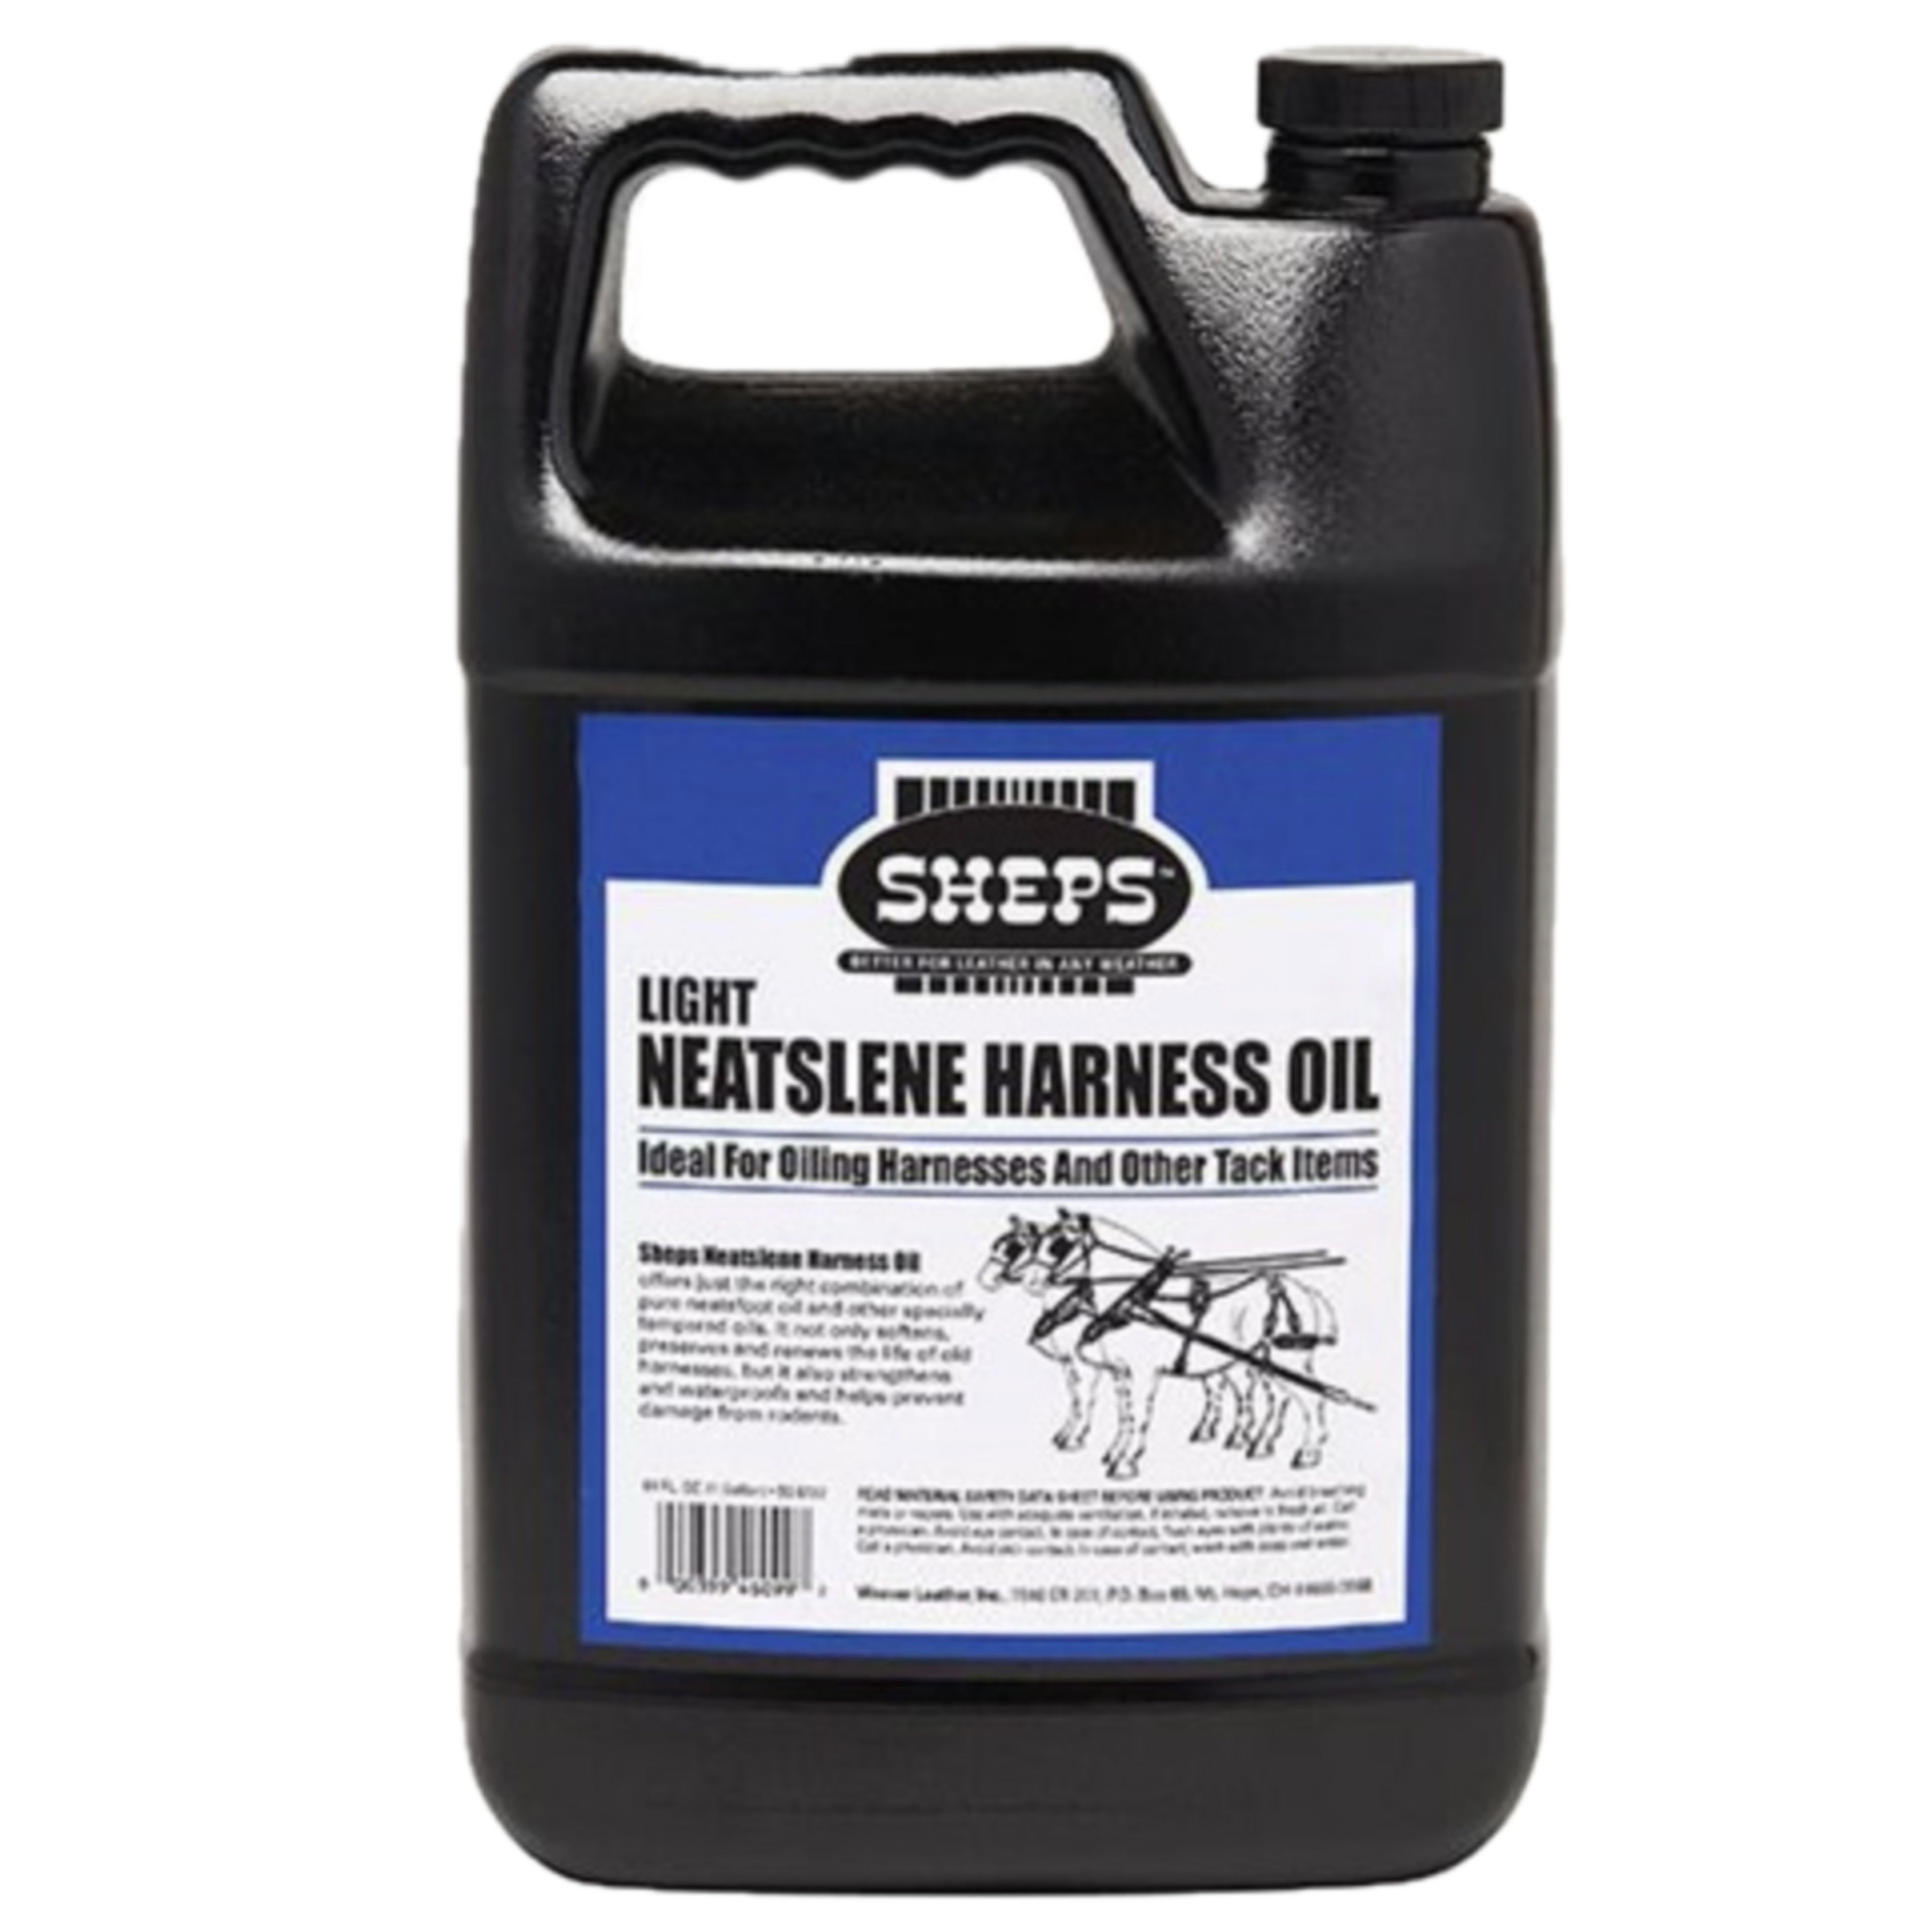 Sheps Neatslene Harness Oil 32 oz